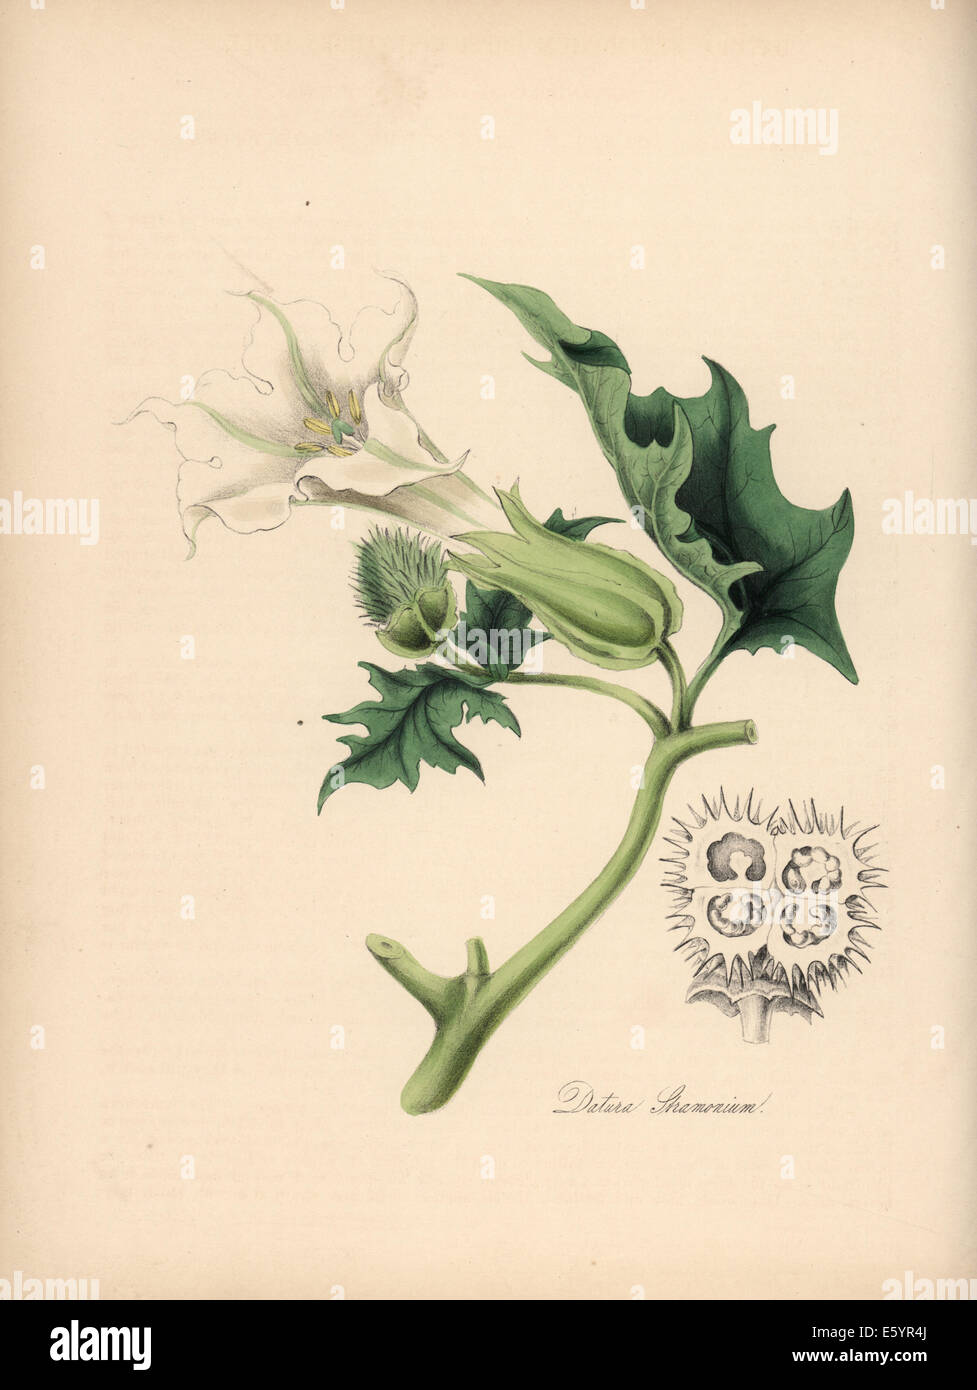 Jimson weed or thornapple, Datura stramonium. Stock Photo